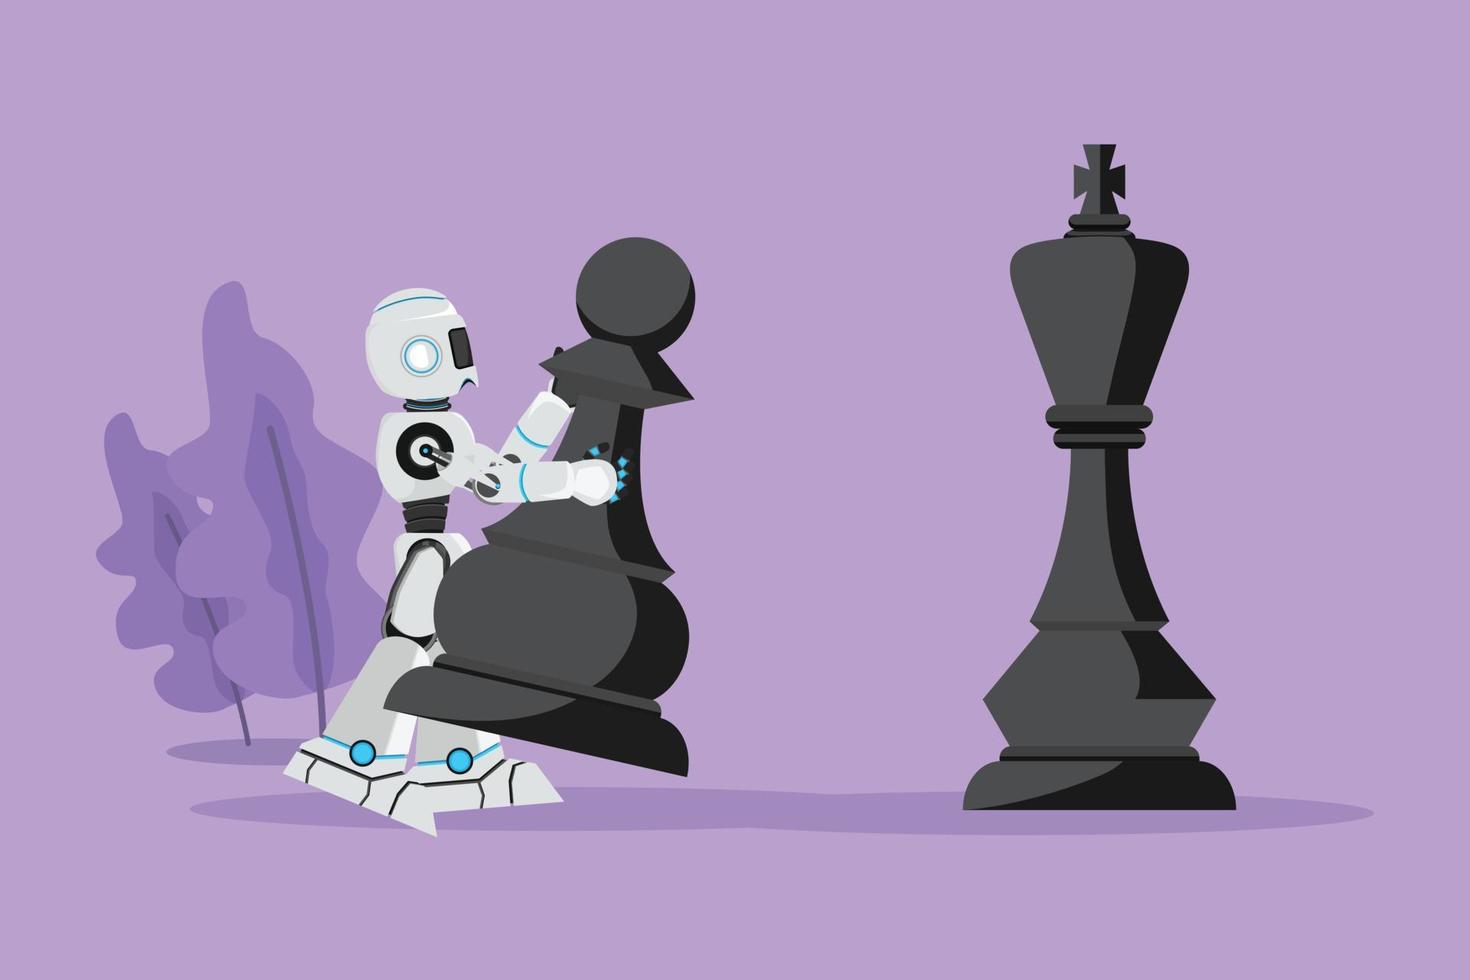 robot de dibujo plano de personaje sosteniendo una pieza de ajedrez de peón para vencer al rey de ajedrez. Planificación de juegos de movimiento estratégico. organismo cibernético robot humanoide. desarrollo robótico. ilustración vectorial de diseño de dibujos animados vector